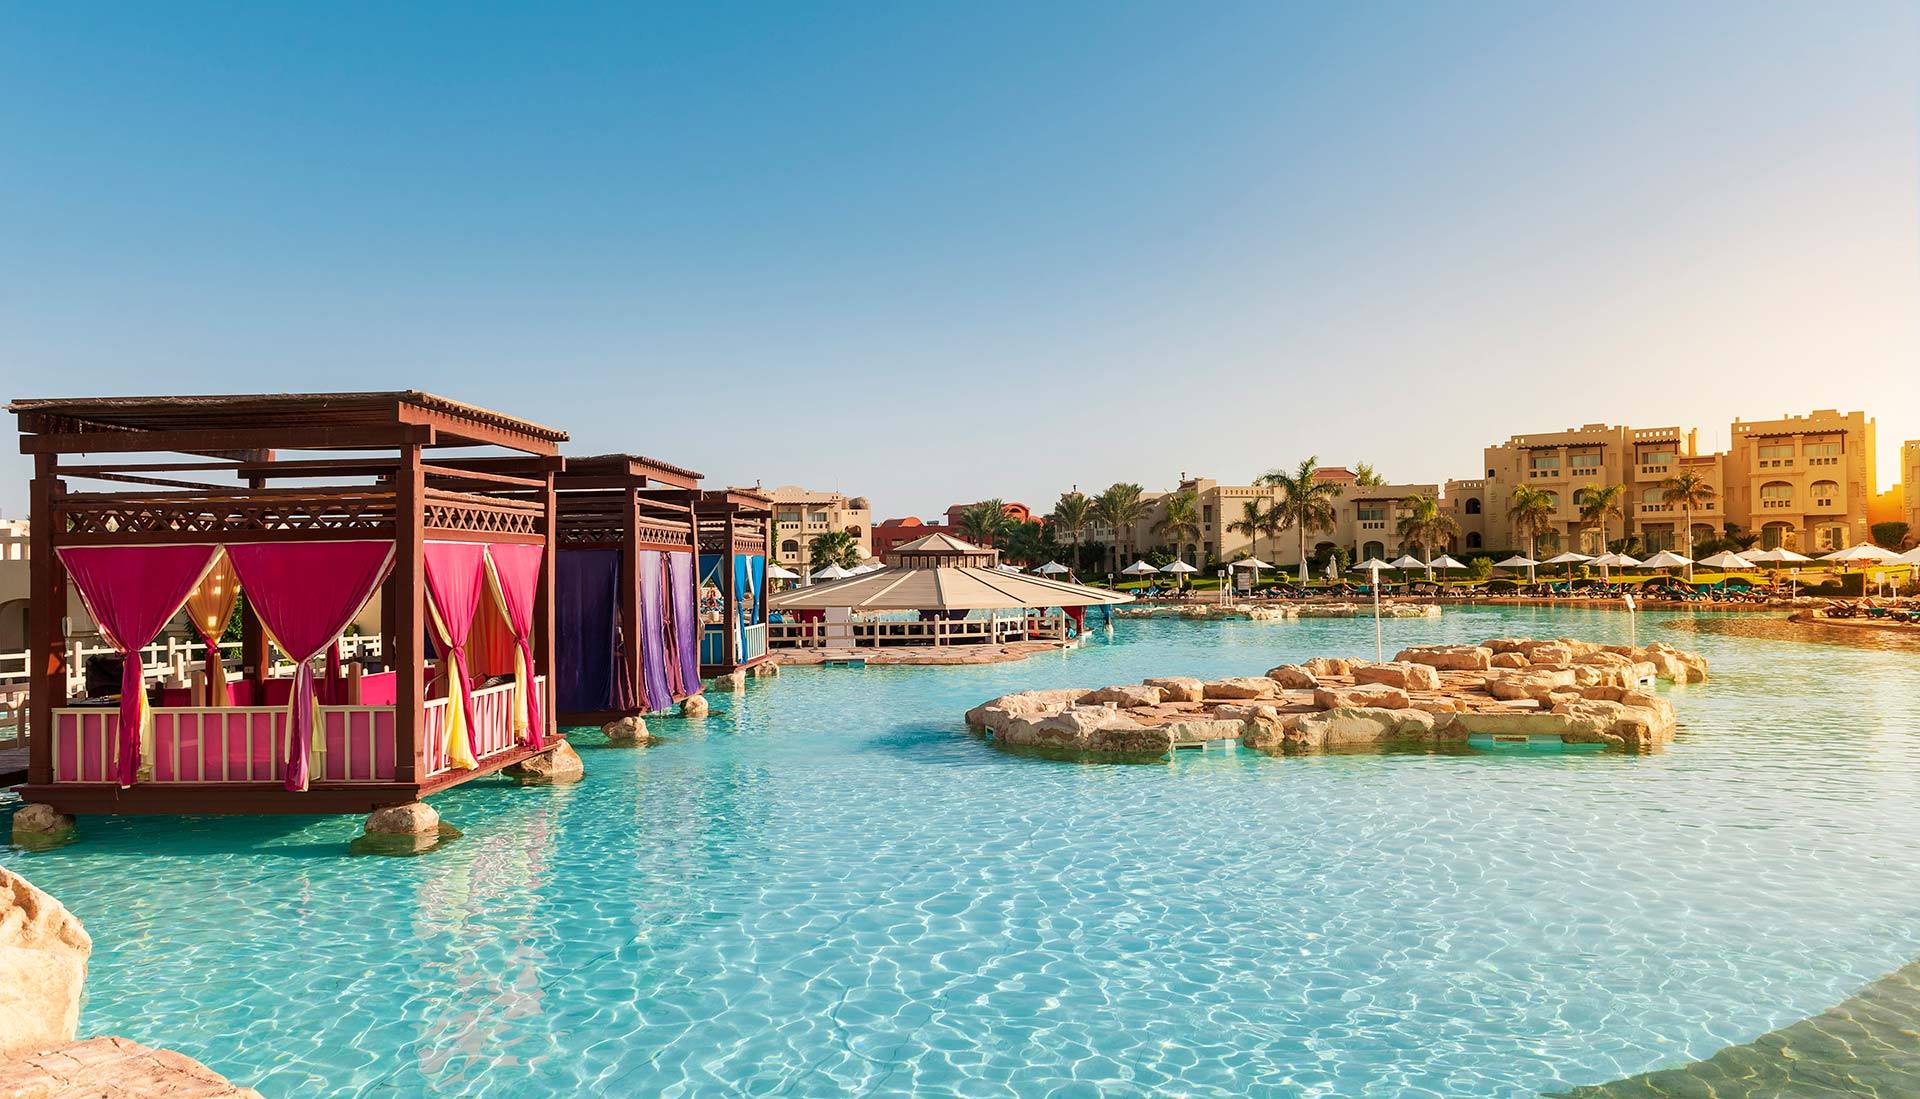 8 A resort in Sharm El Sheikh